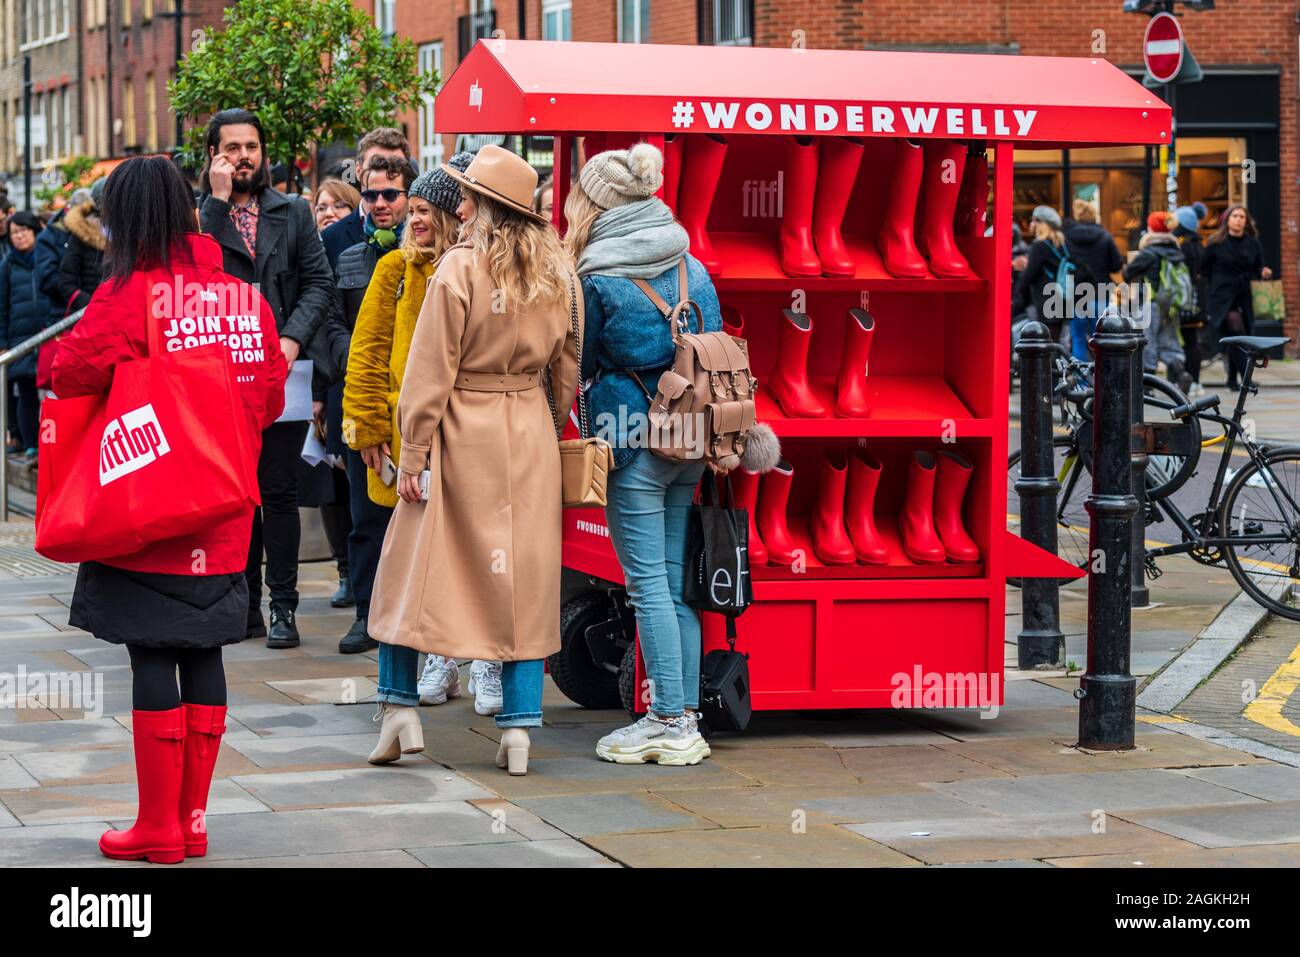 La promoción Wonderwelly Fitflop en Spitalfields Market de Londres. Wonderwelly es promovido como súper confortables botas Wellington. Foto de stock